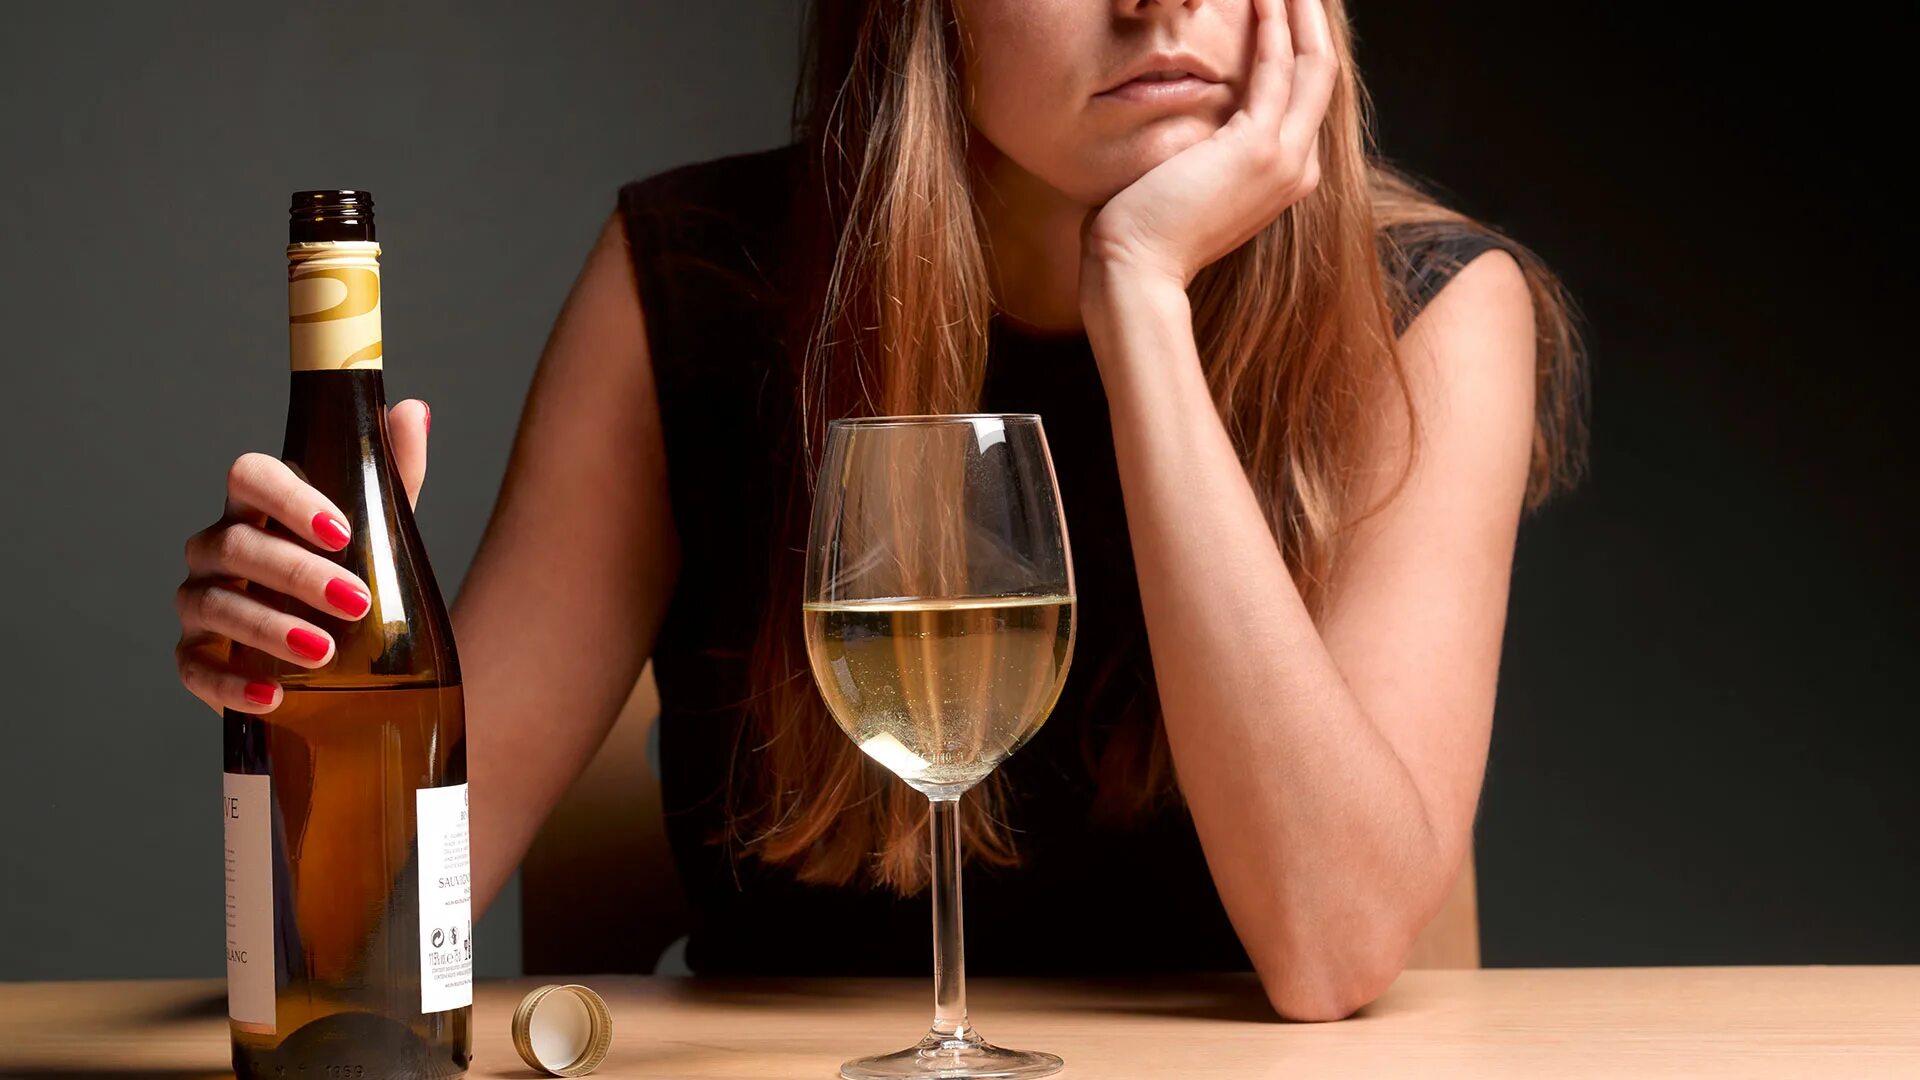 Лица злоупотребляющие алкоголем. Алкоголизм. Женщина и алкоголь. Женщина с бутылкой вина. Пьющая девушка.